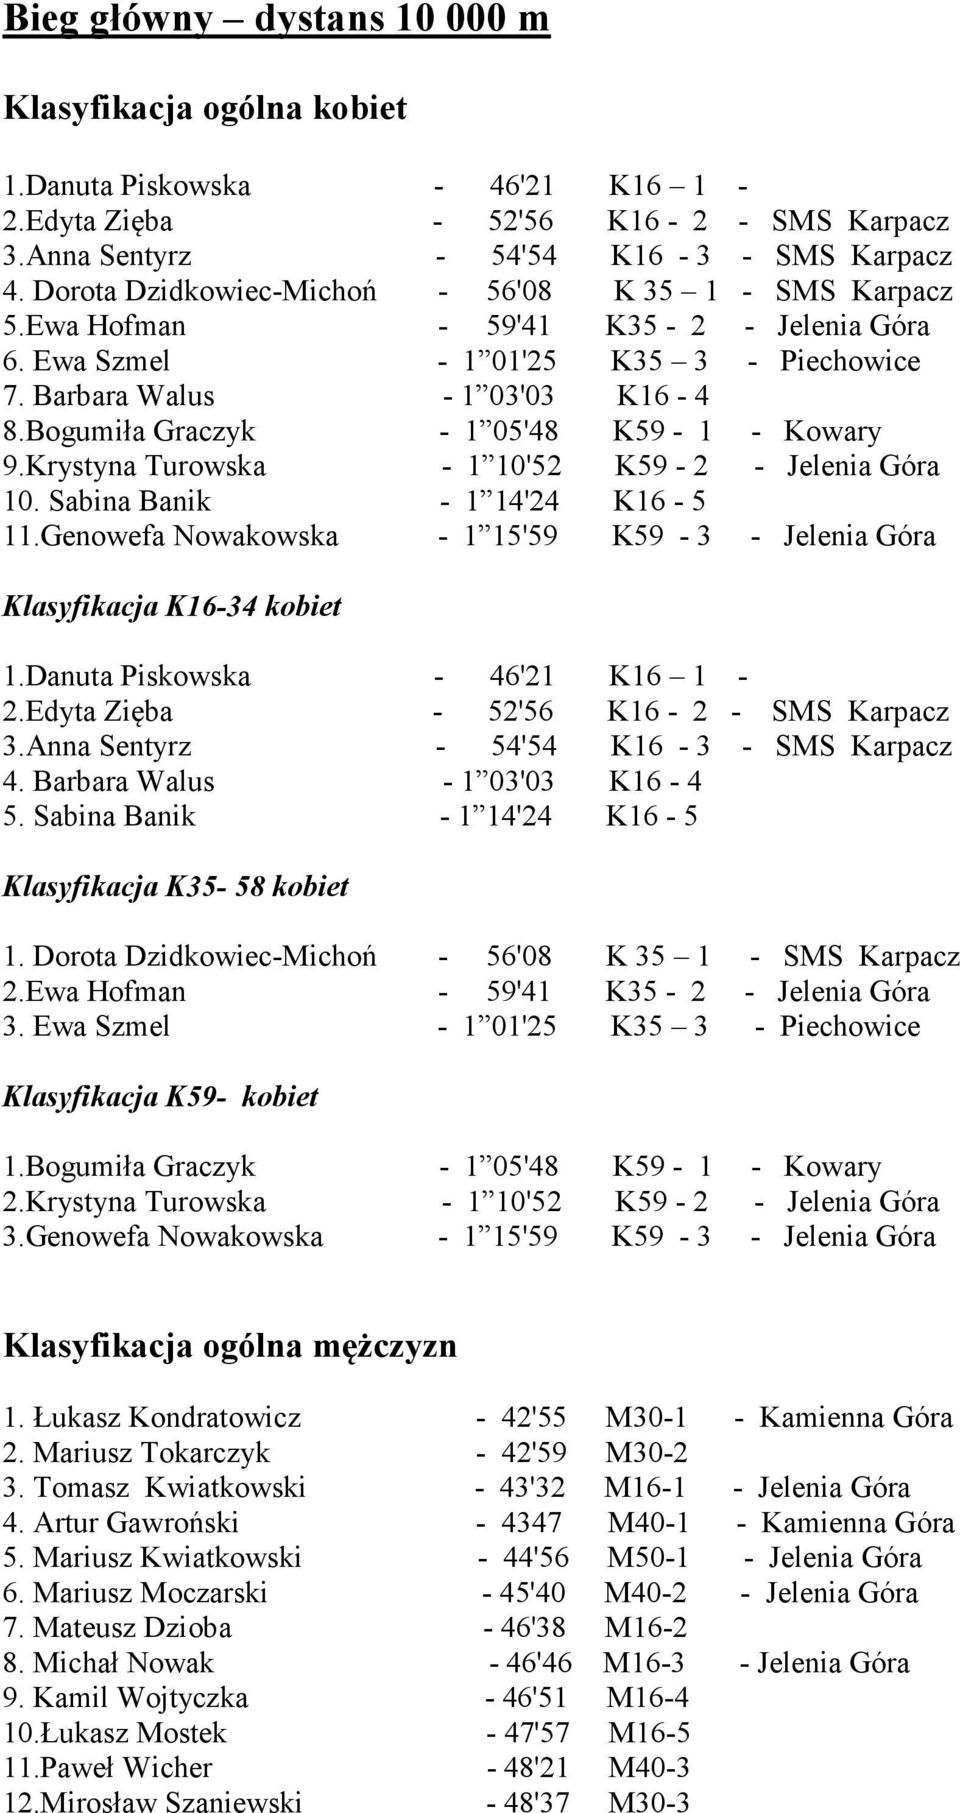 Bogumiła Graczyk - 1 05'48 K59-1 - Kowary 9.Krystyna Turowska - 1 10'52 K59-2 - Jelenia Góra 10. Sabina Banik - 1 14'24 K16-5 11.